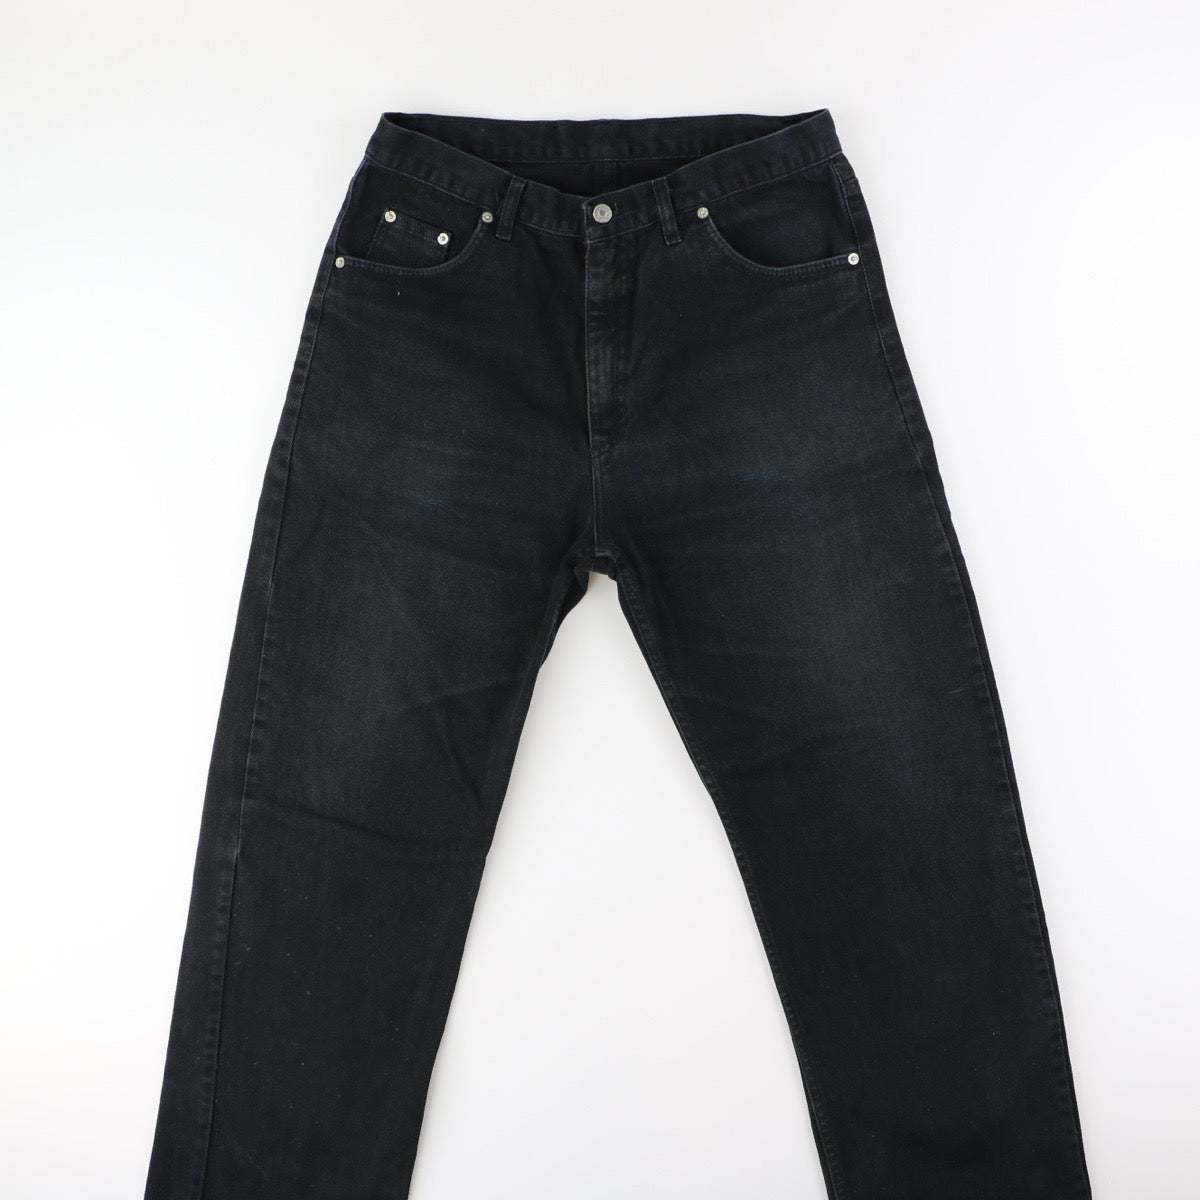 Levis 501 Jeans (33)